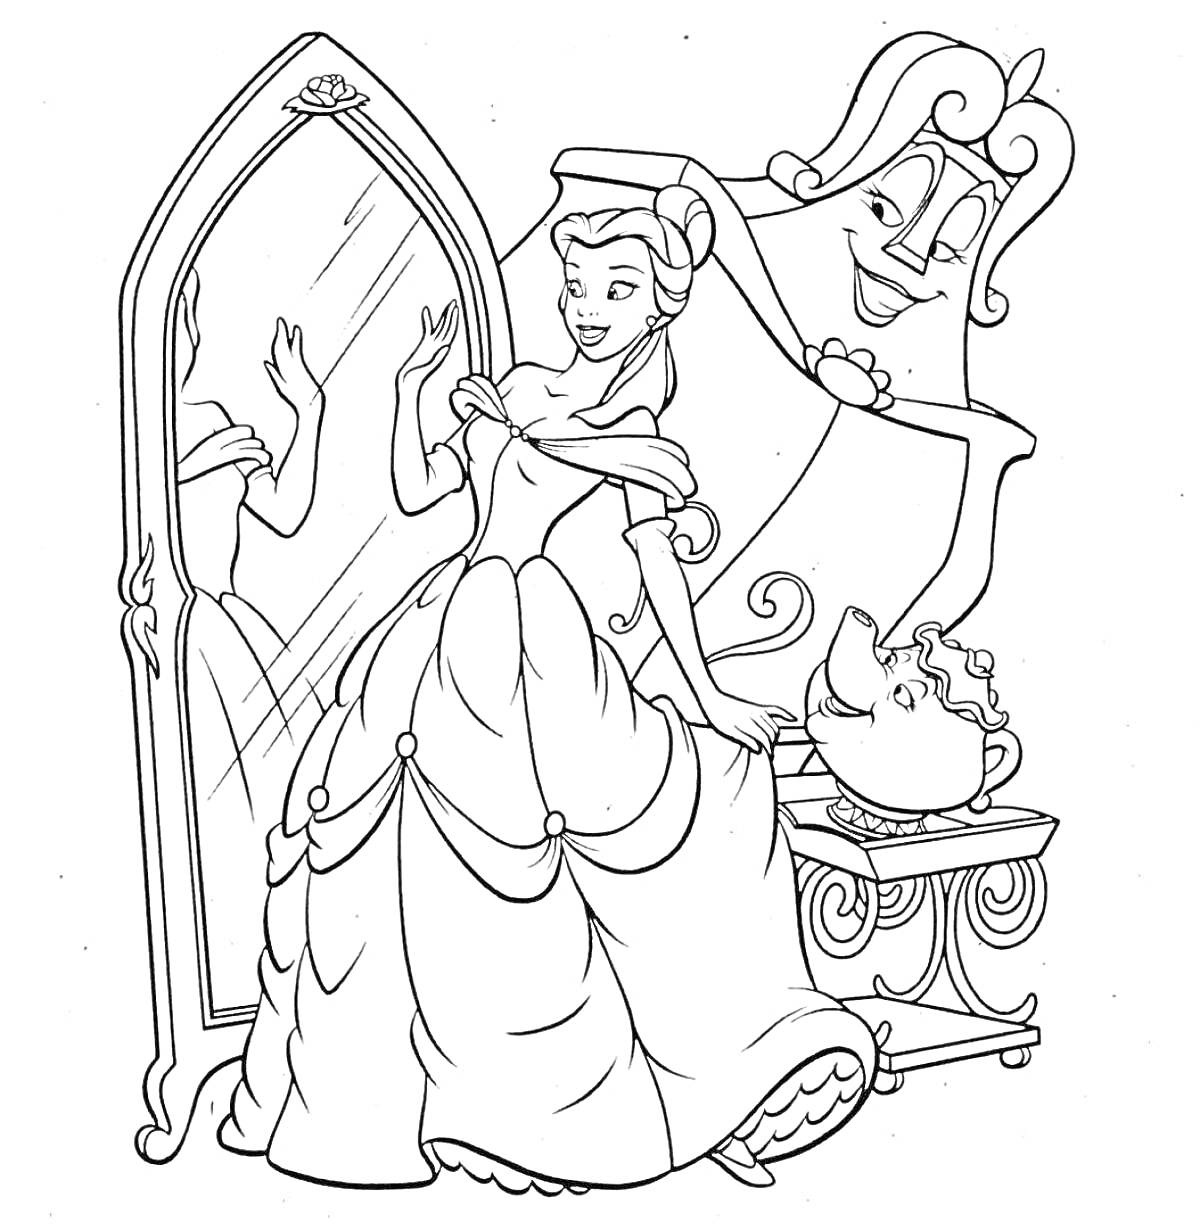 Принцесса Бель у большого зеркала с канделябром и чайником возле столика